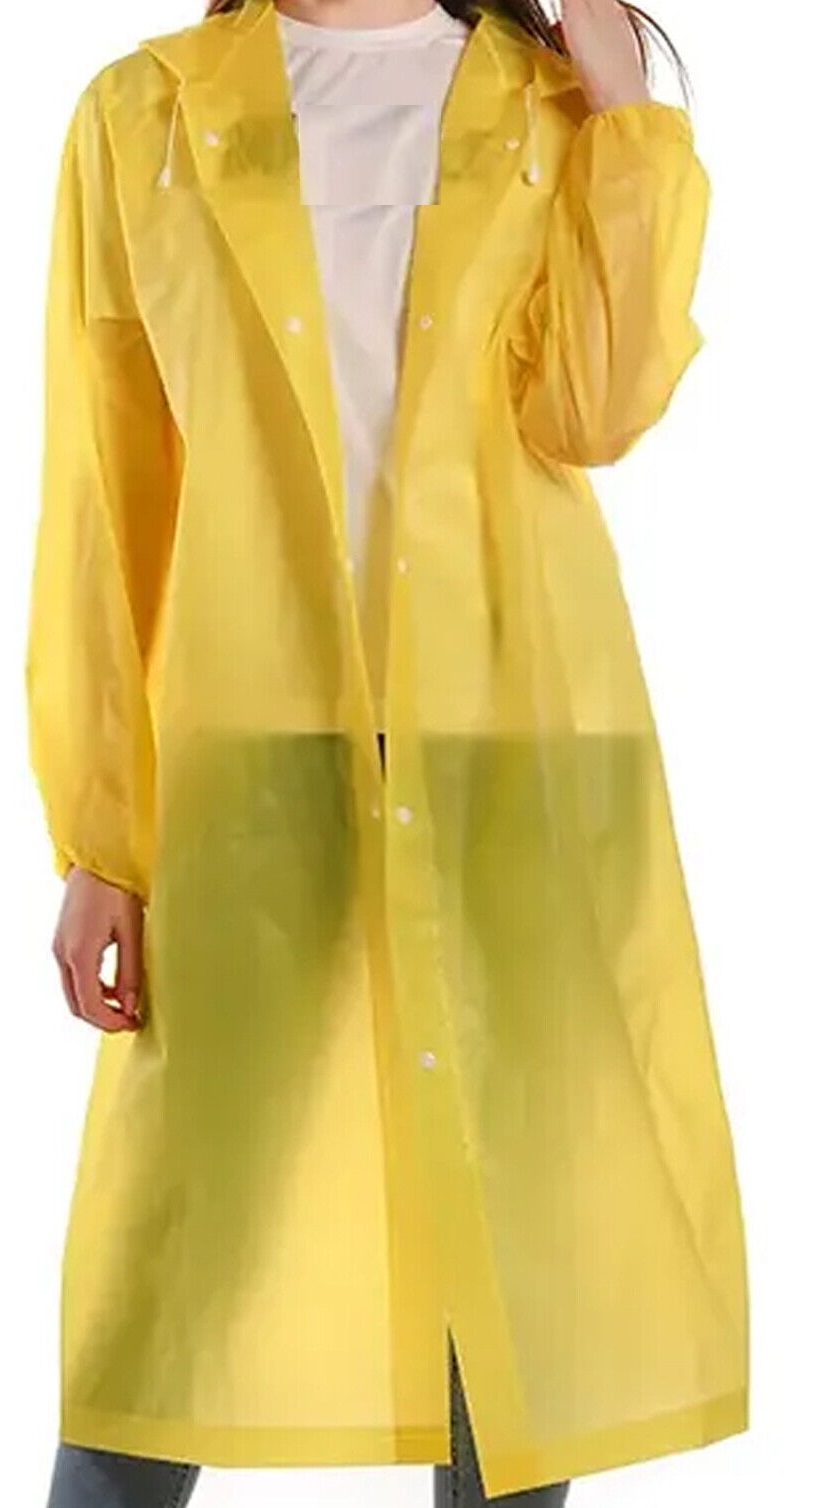 Purple Large Travel Raincoat Rain Jacket